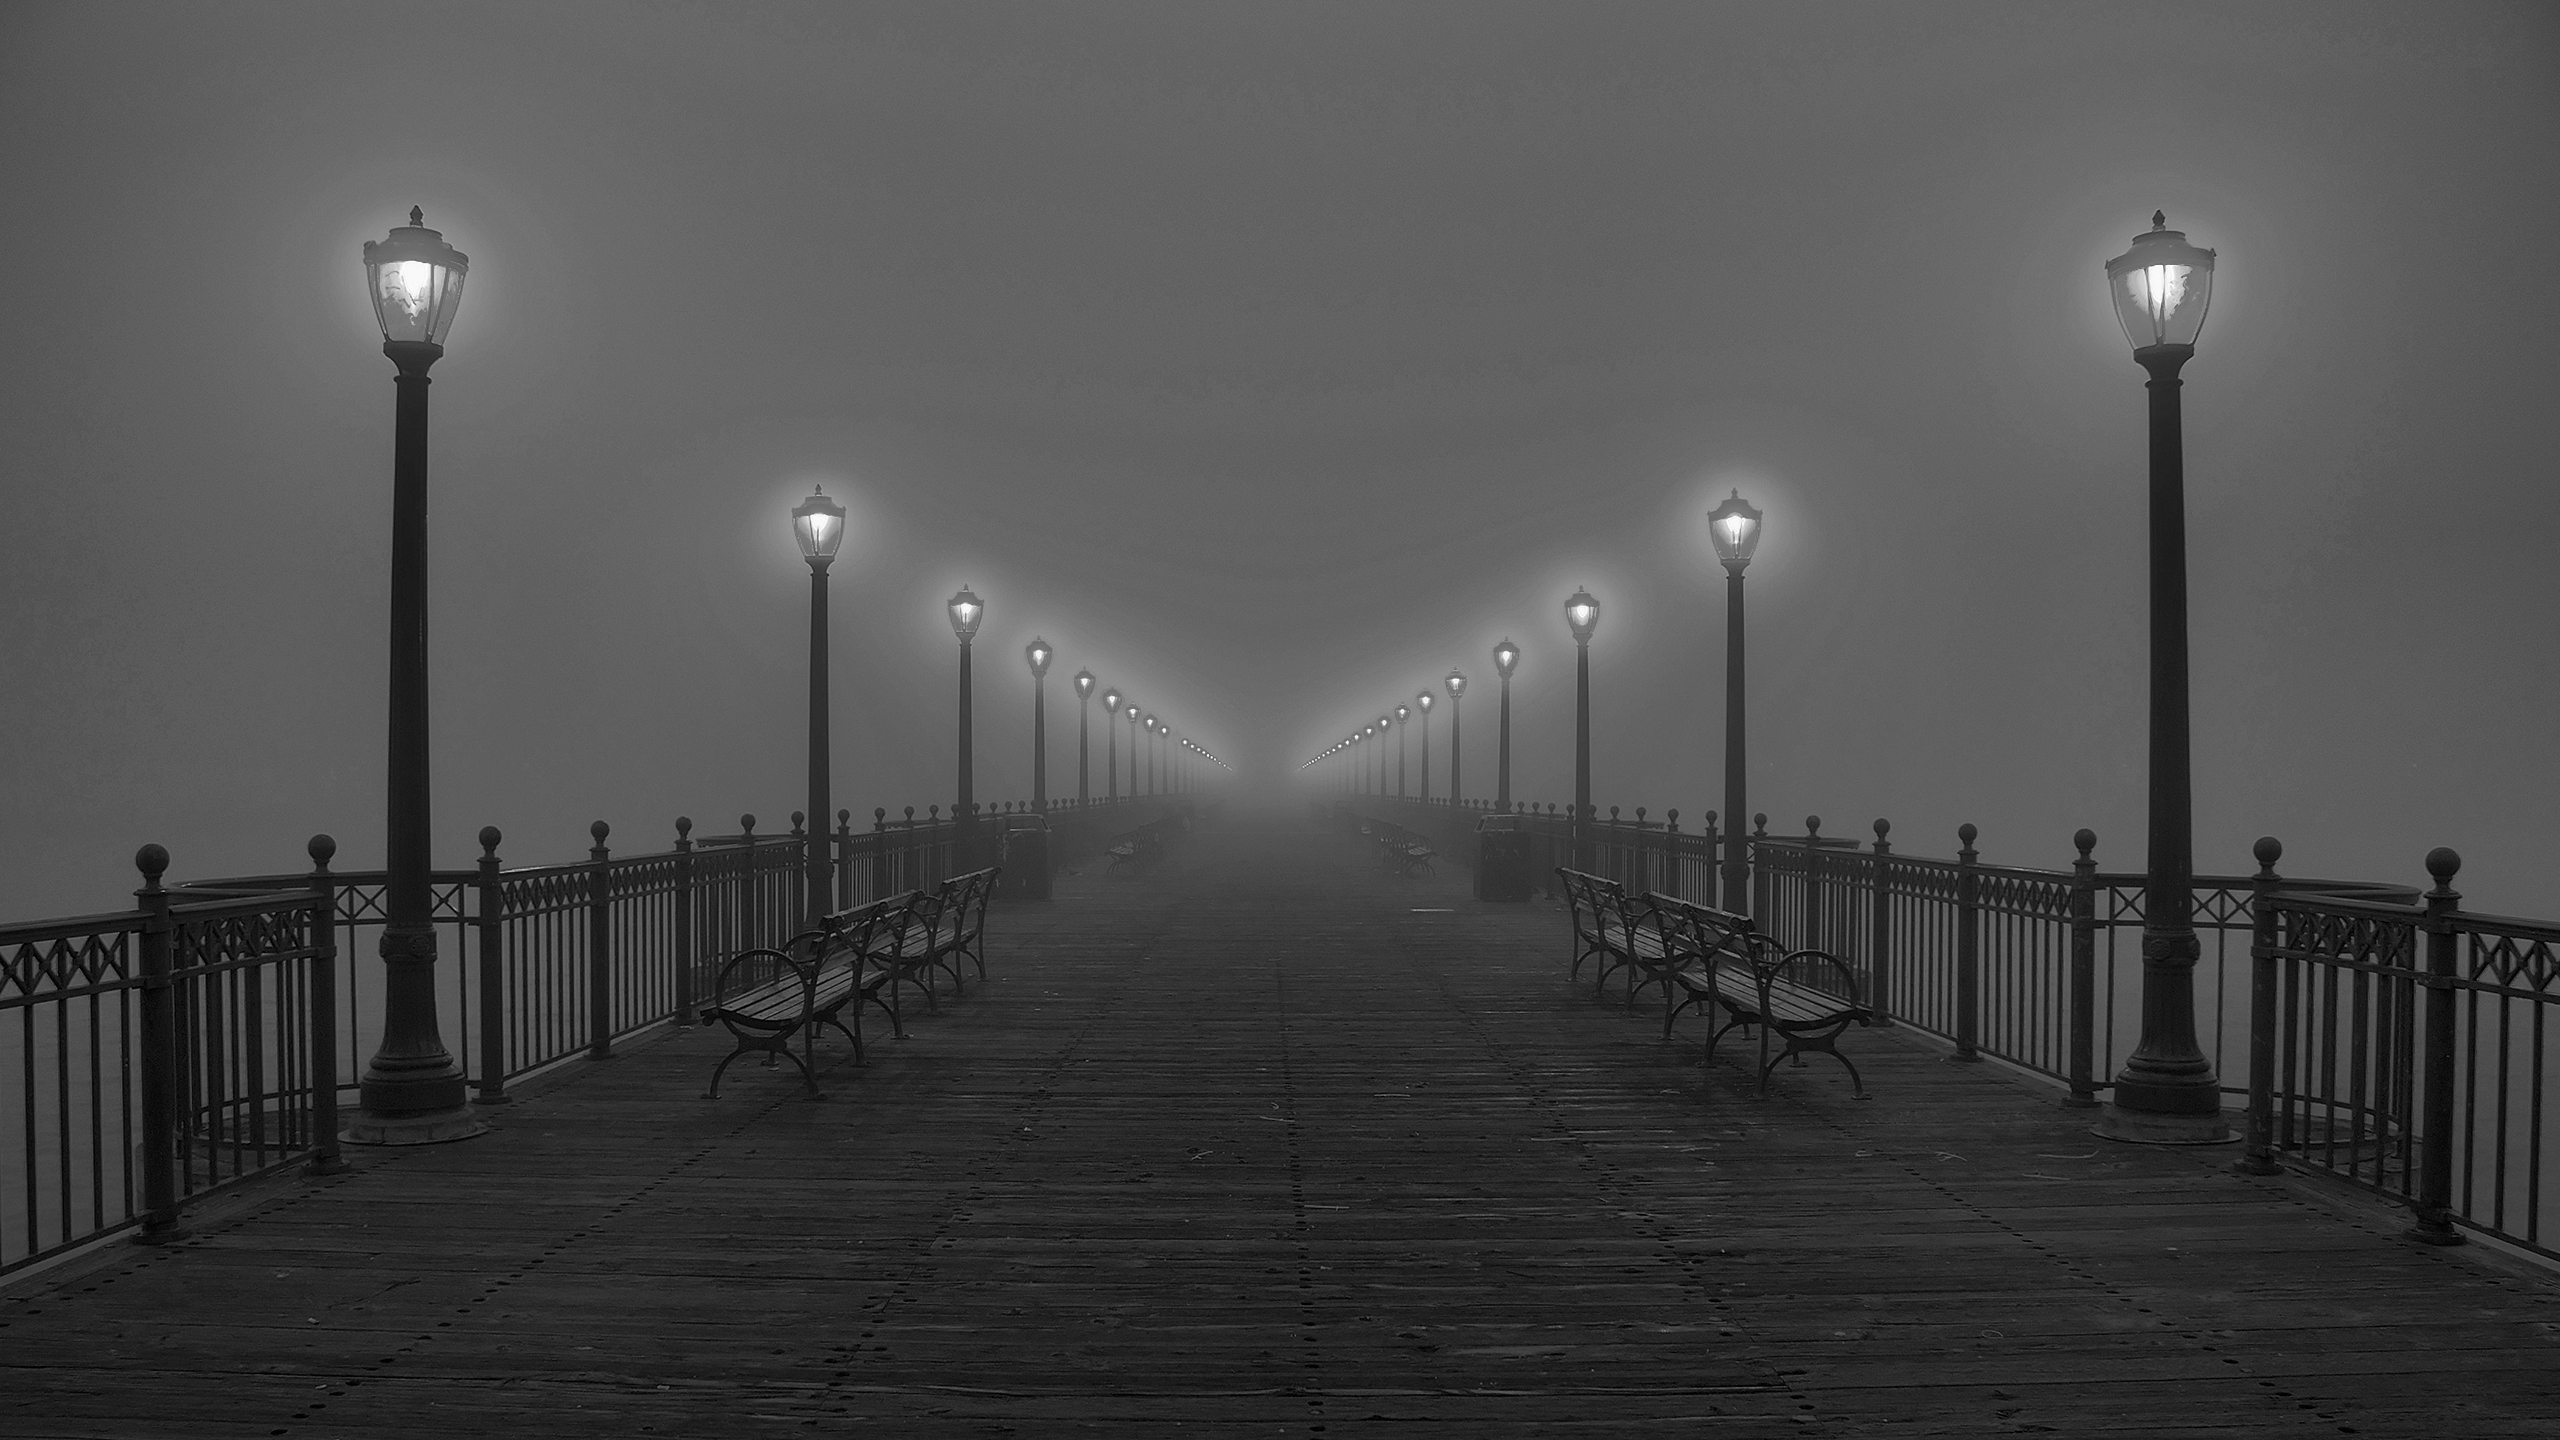 fog, piers, lamps, grayscale - desktop wallpaper